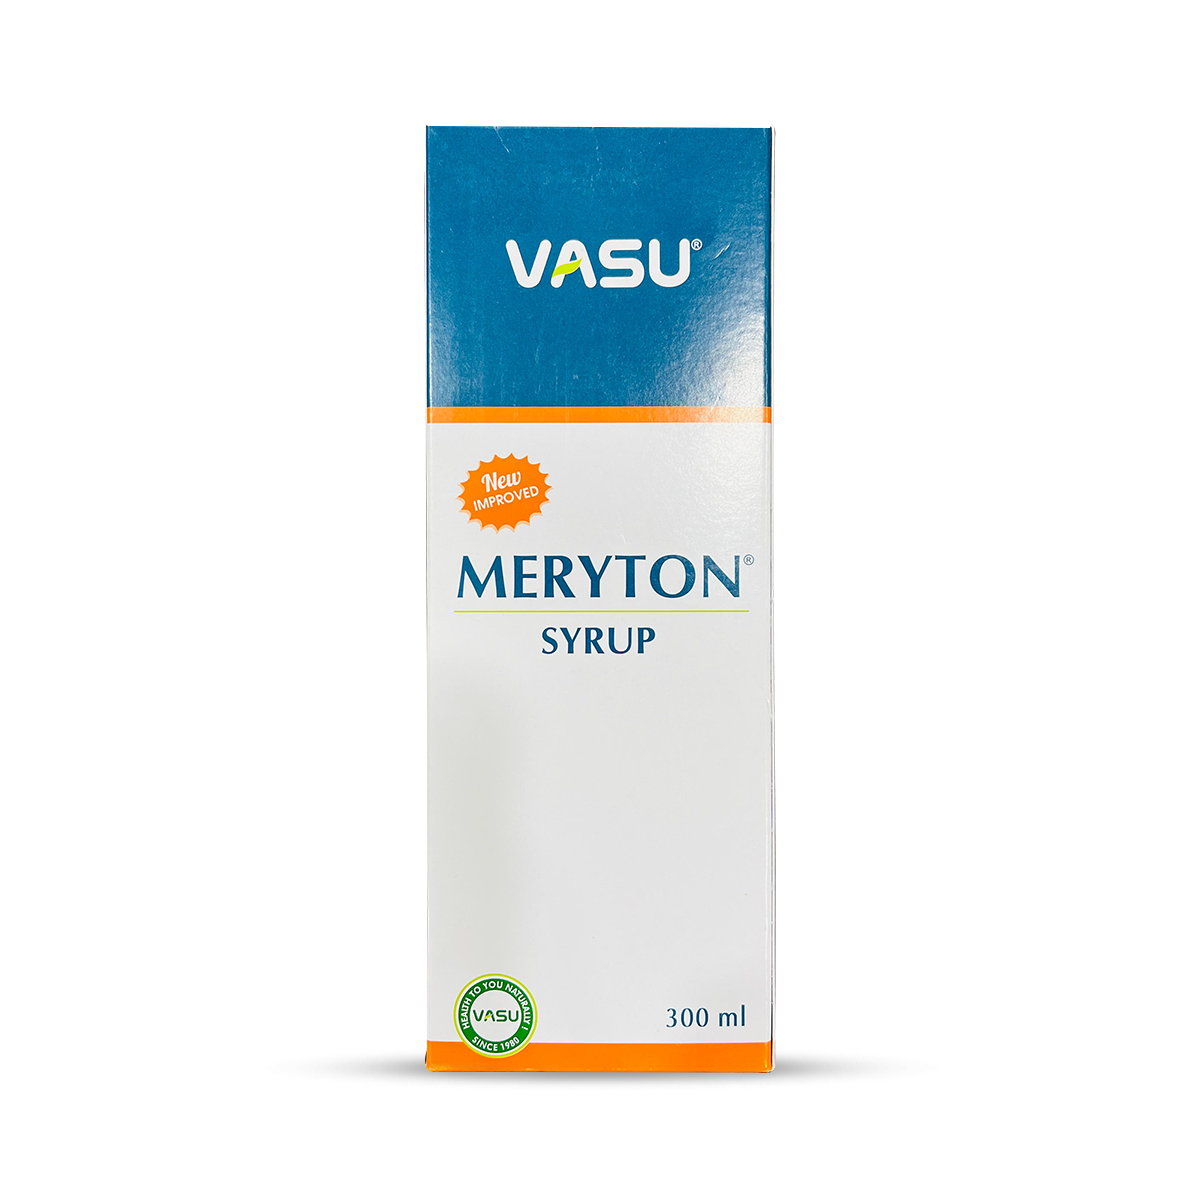 Vasu Meryton Syrup - 300ml